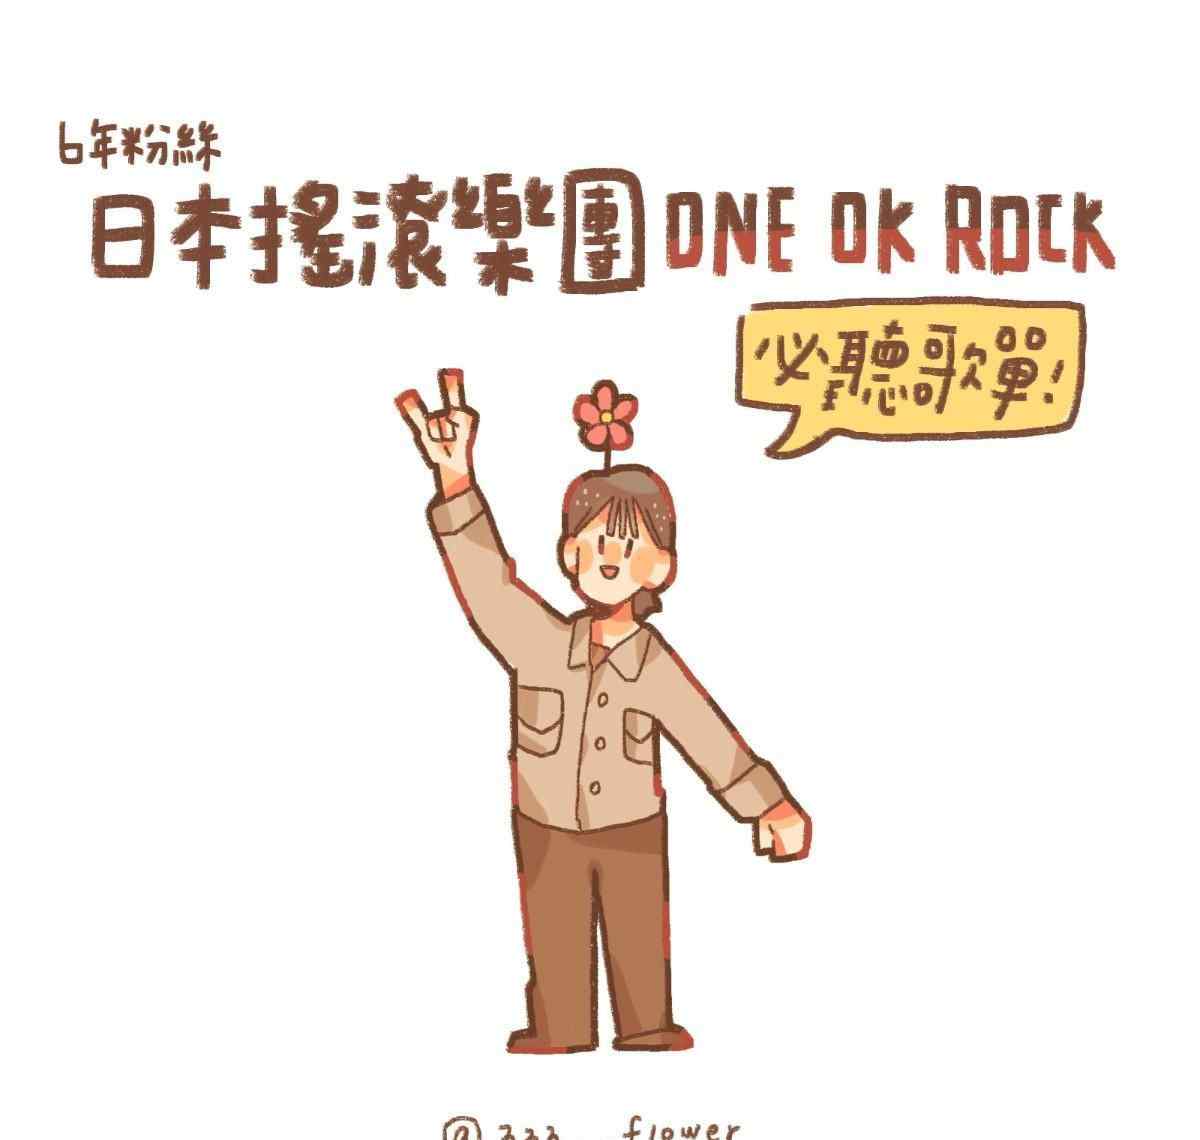 日本摇滚乐团ONE OK ROCK 出道至今必听歌曲推荐！